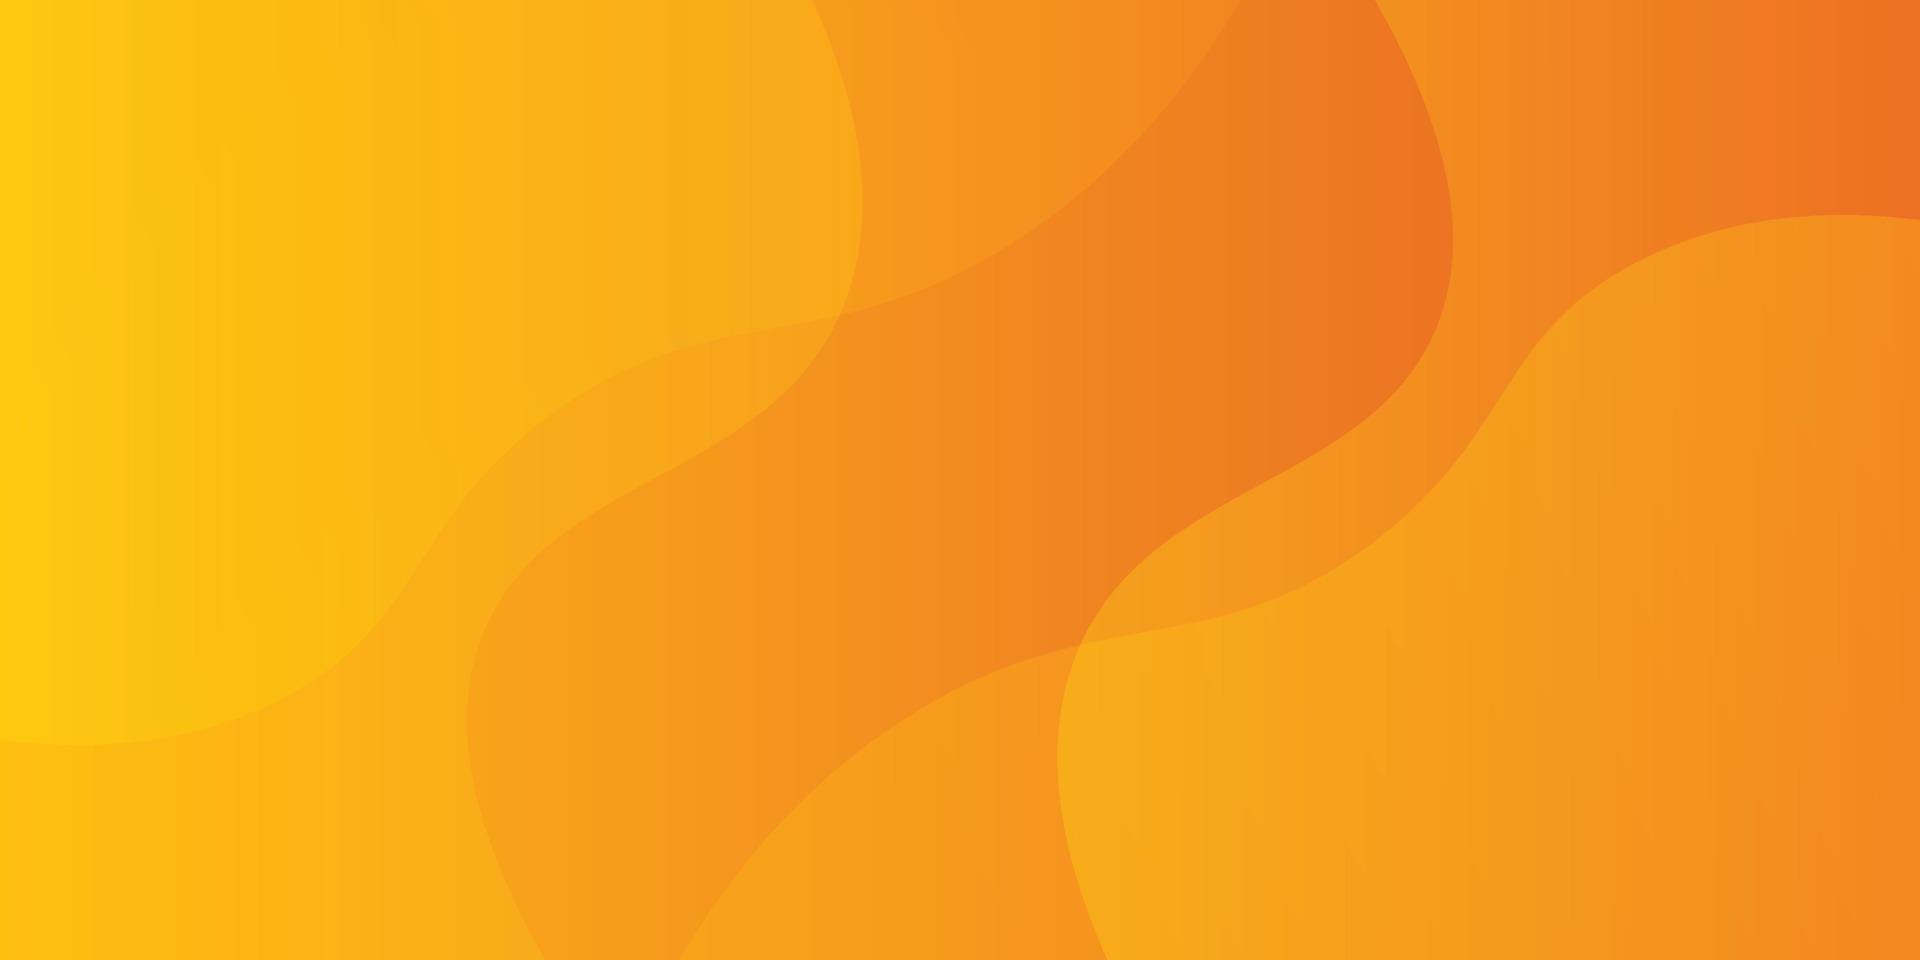 orange gewellter abstrakter Hintergrund, orange dynamischer gewellter Formhintergrundgebrauch für Geschäft, Unternehmen, Institution, Plakat, Schablone, festlich, Präsentation, Seminar, Werbung, Vektor, Illustration vektor